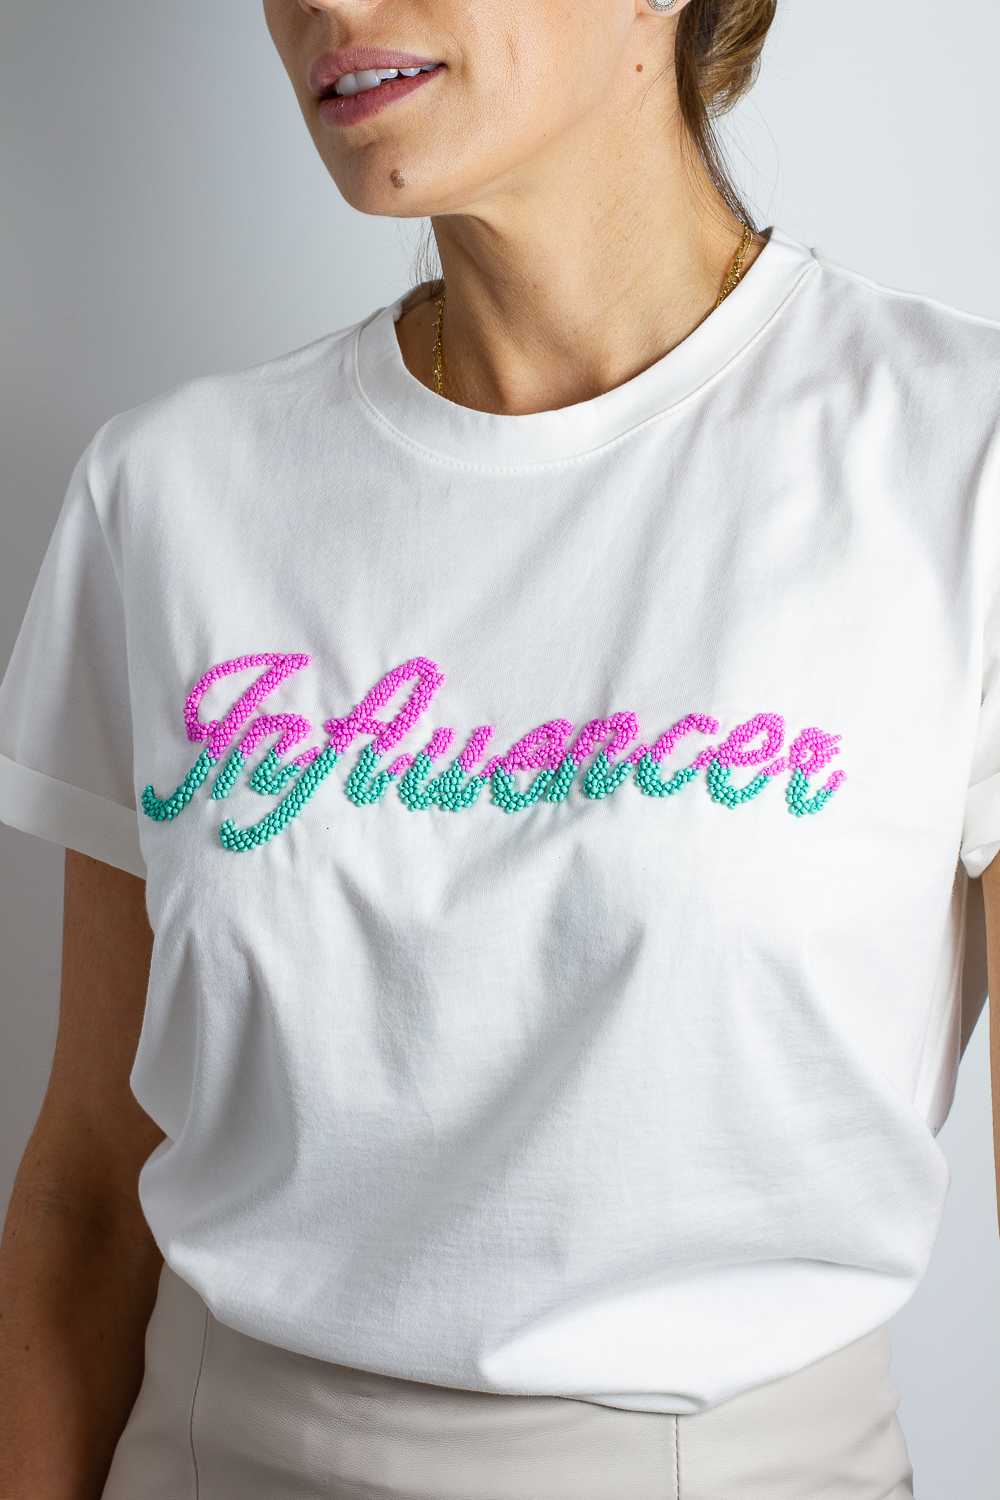 T-shirt Feminina Bordada Influencer - Off - Foto 0